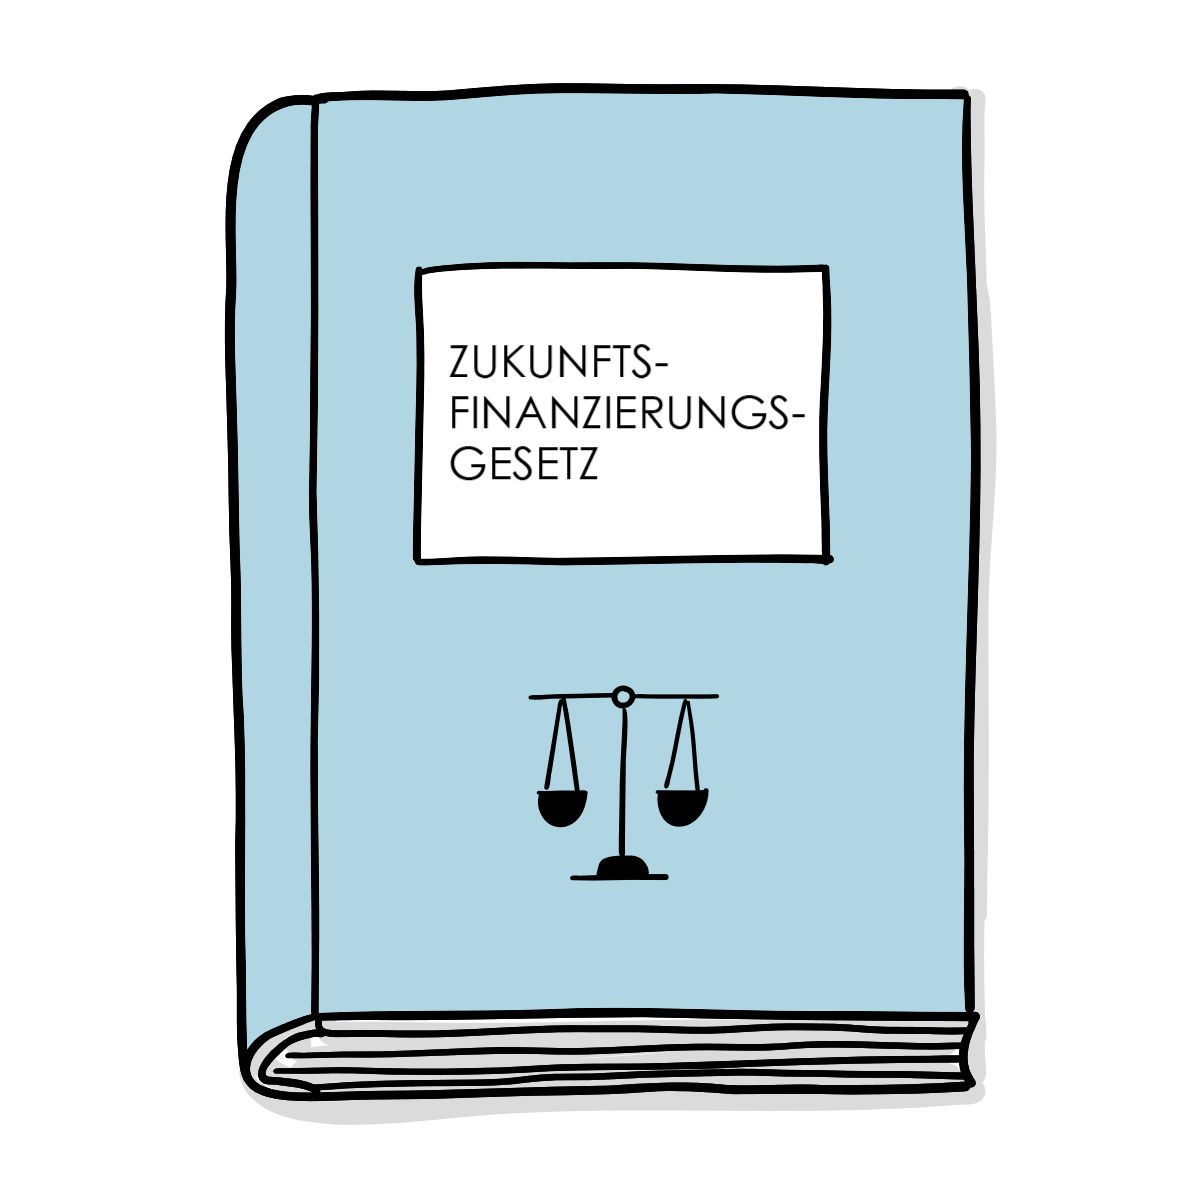 Zukunftsfinanzierungsgesetz: Die Rolle von elektronischen Wertpapieren